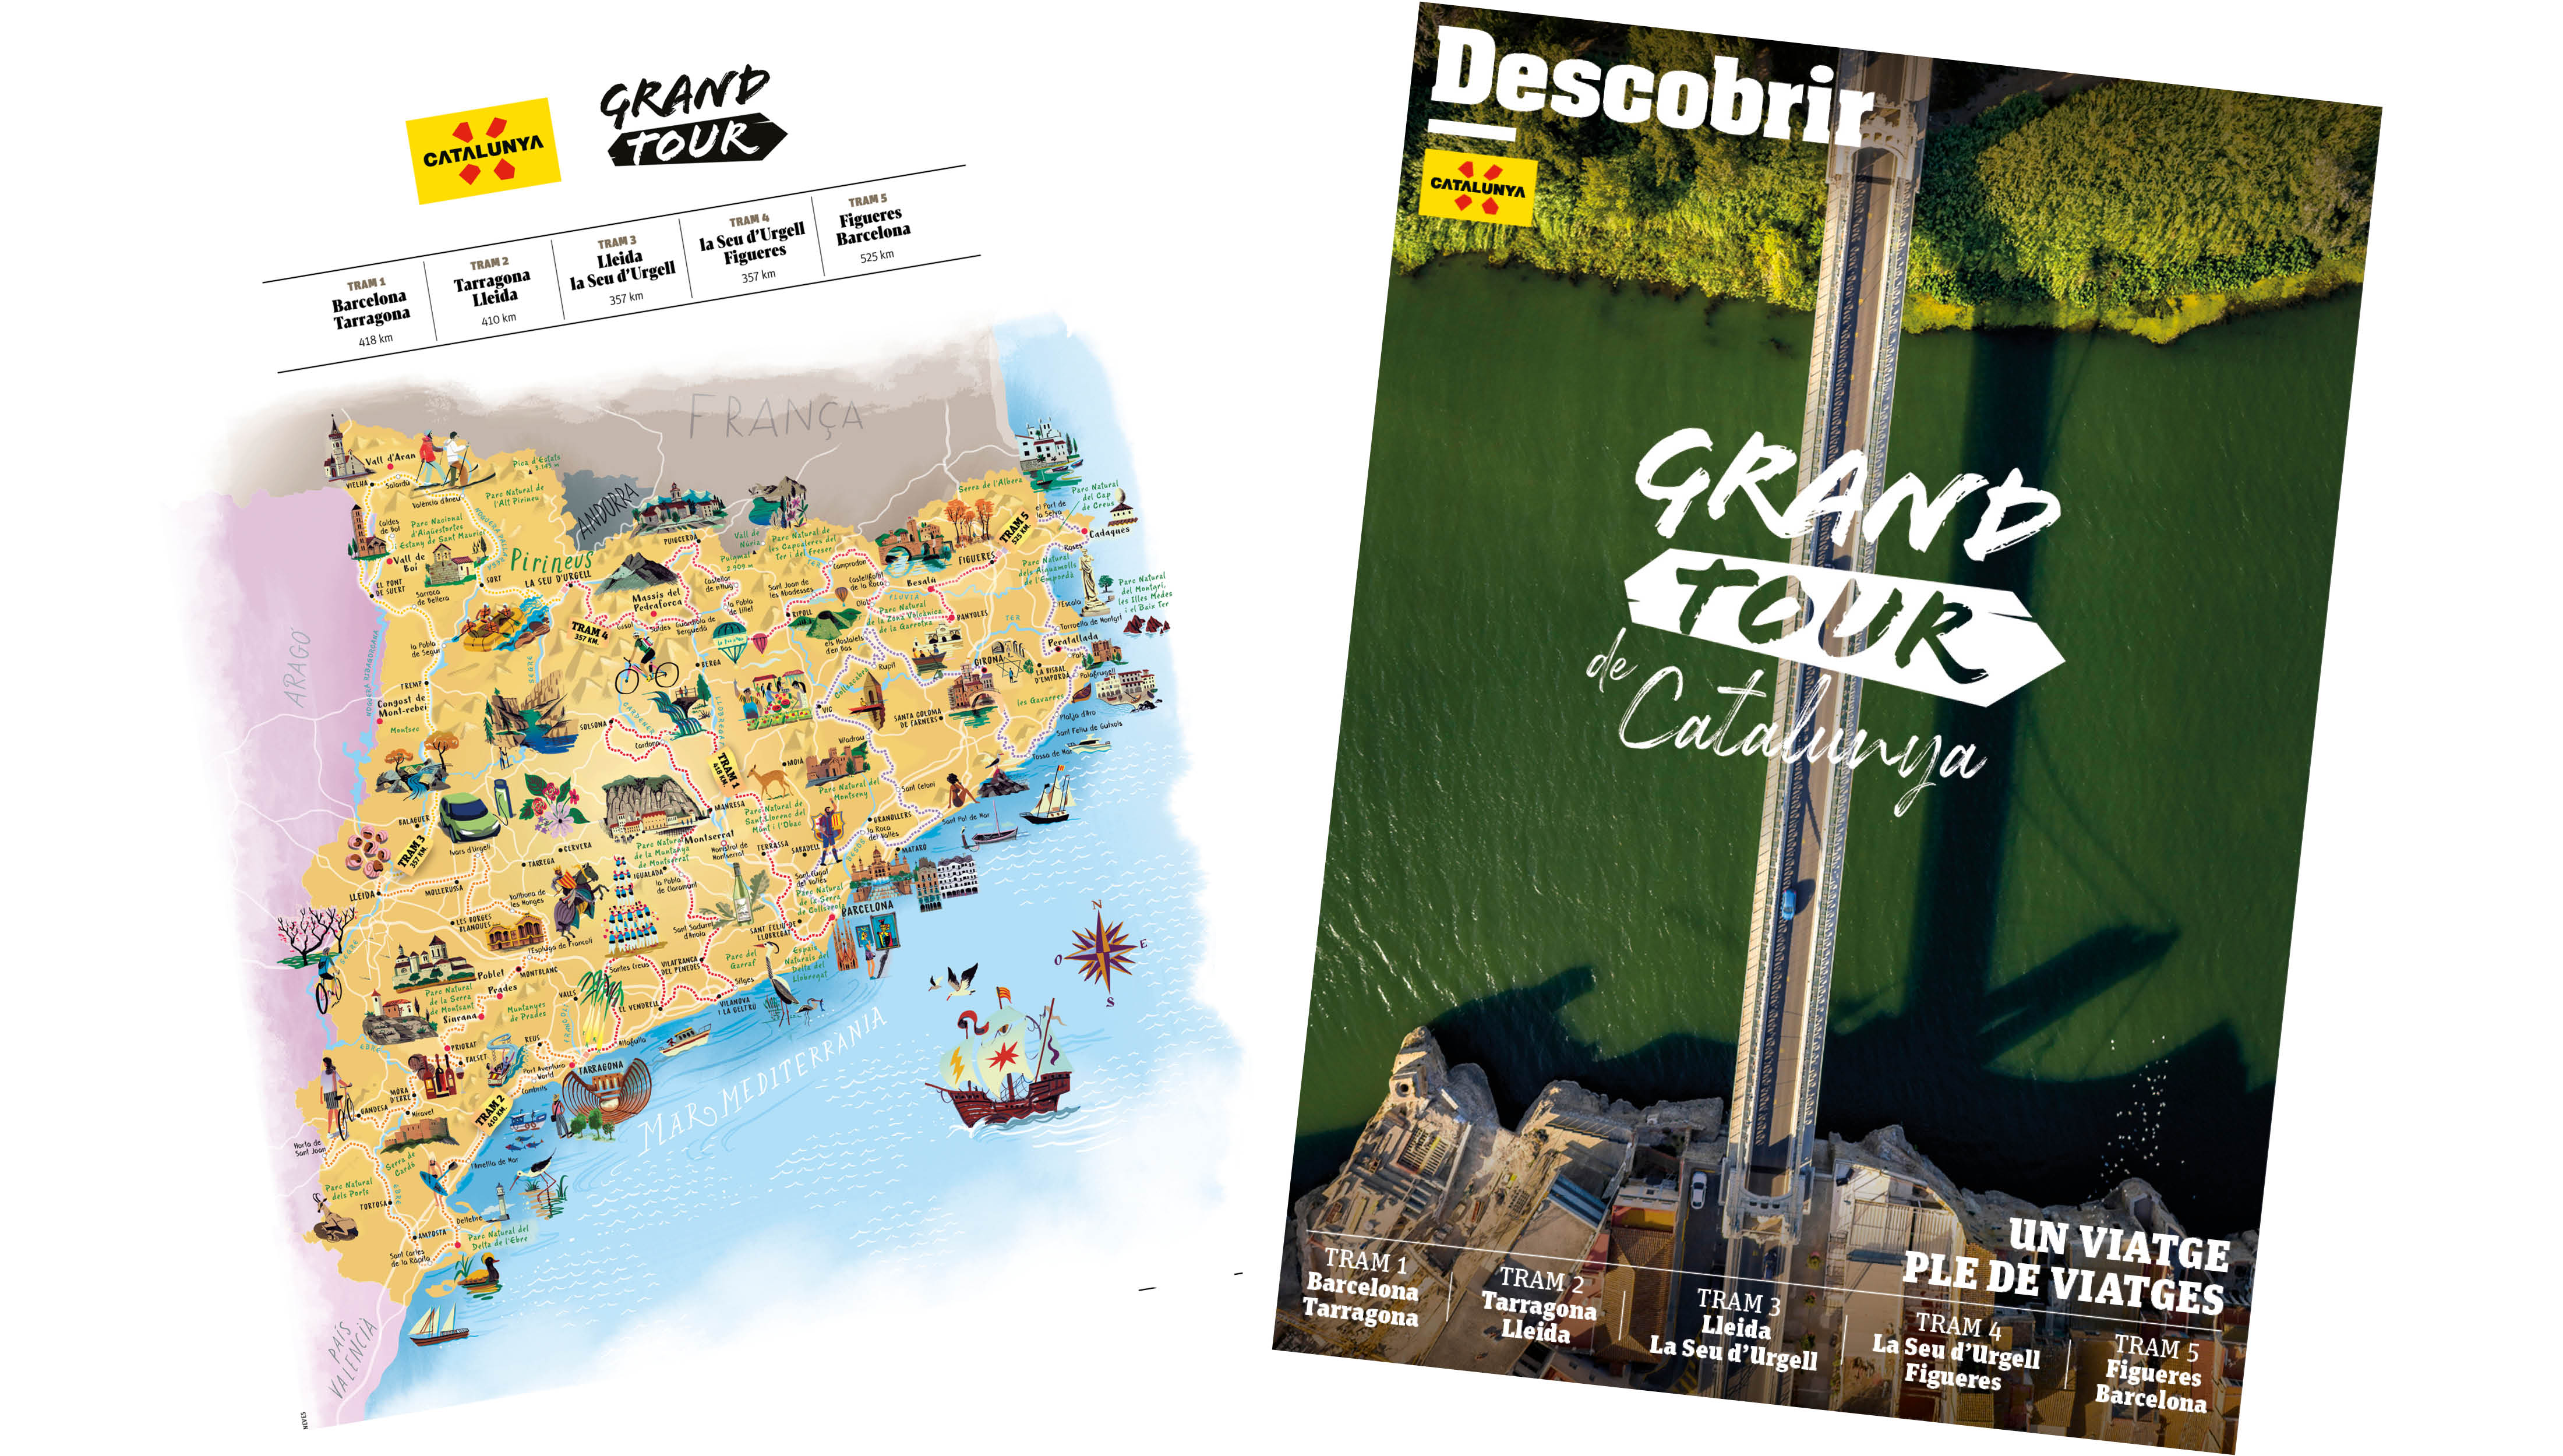 La revista “Descobrir” de Som* presenta el Grand Tour de Catalunya